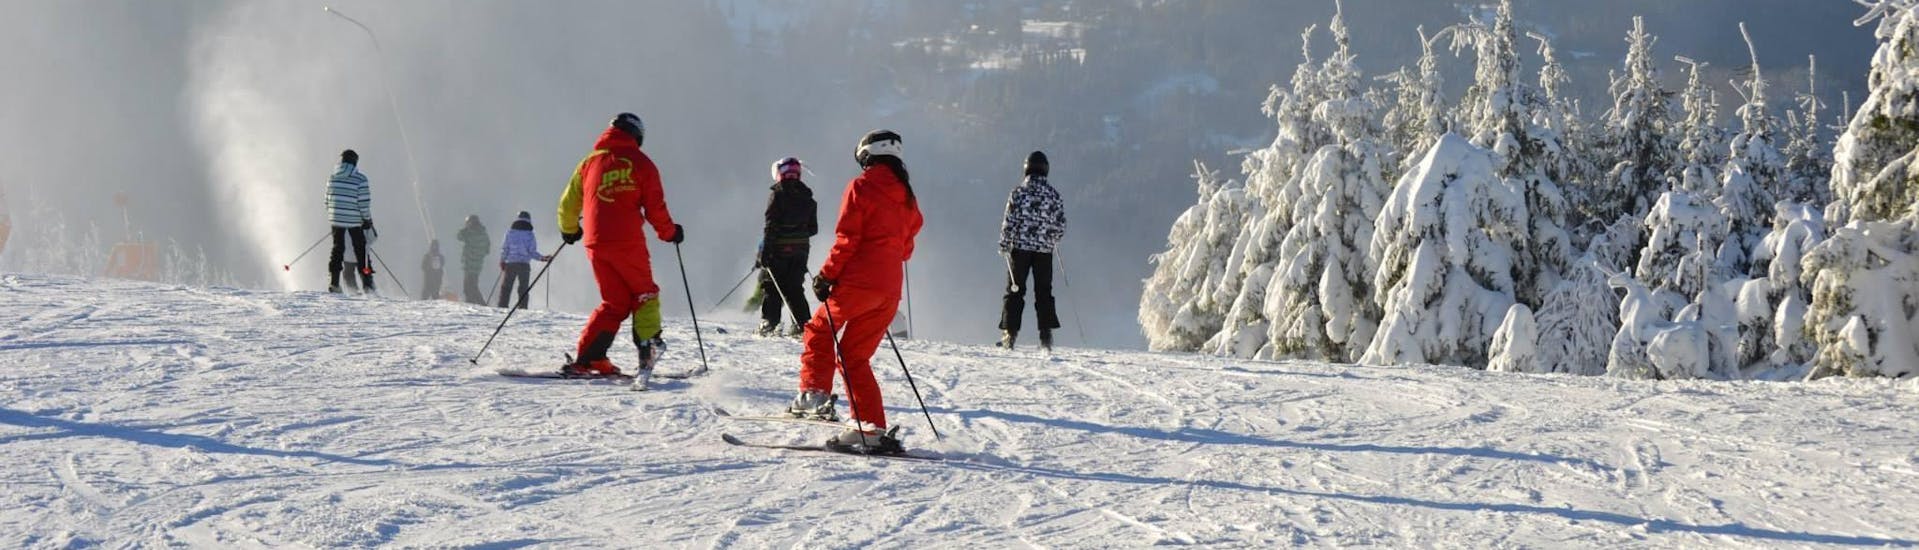 Skilessen voor volwassenen (vanaf 12 jaar) voor alle niveaus.